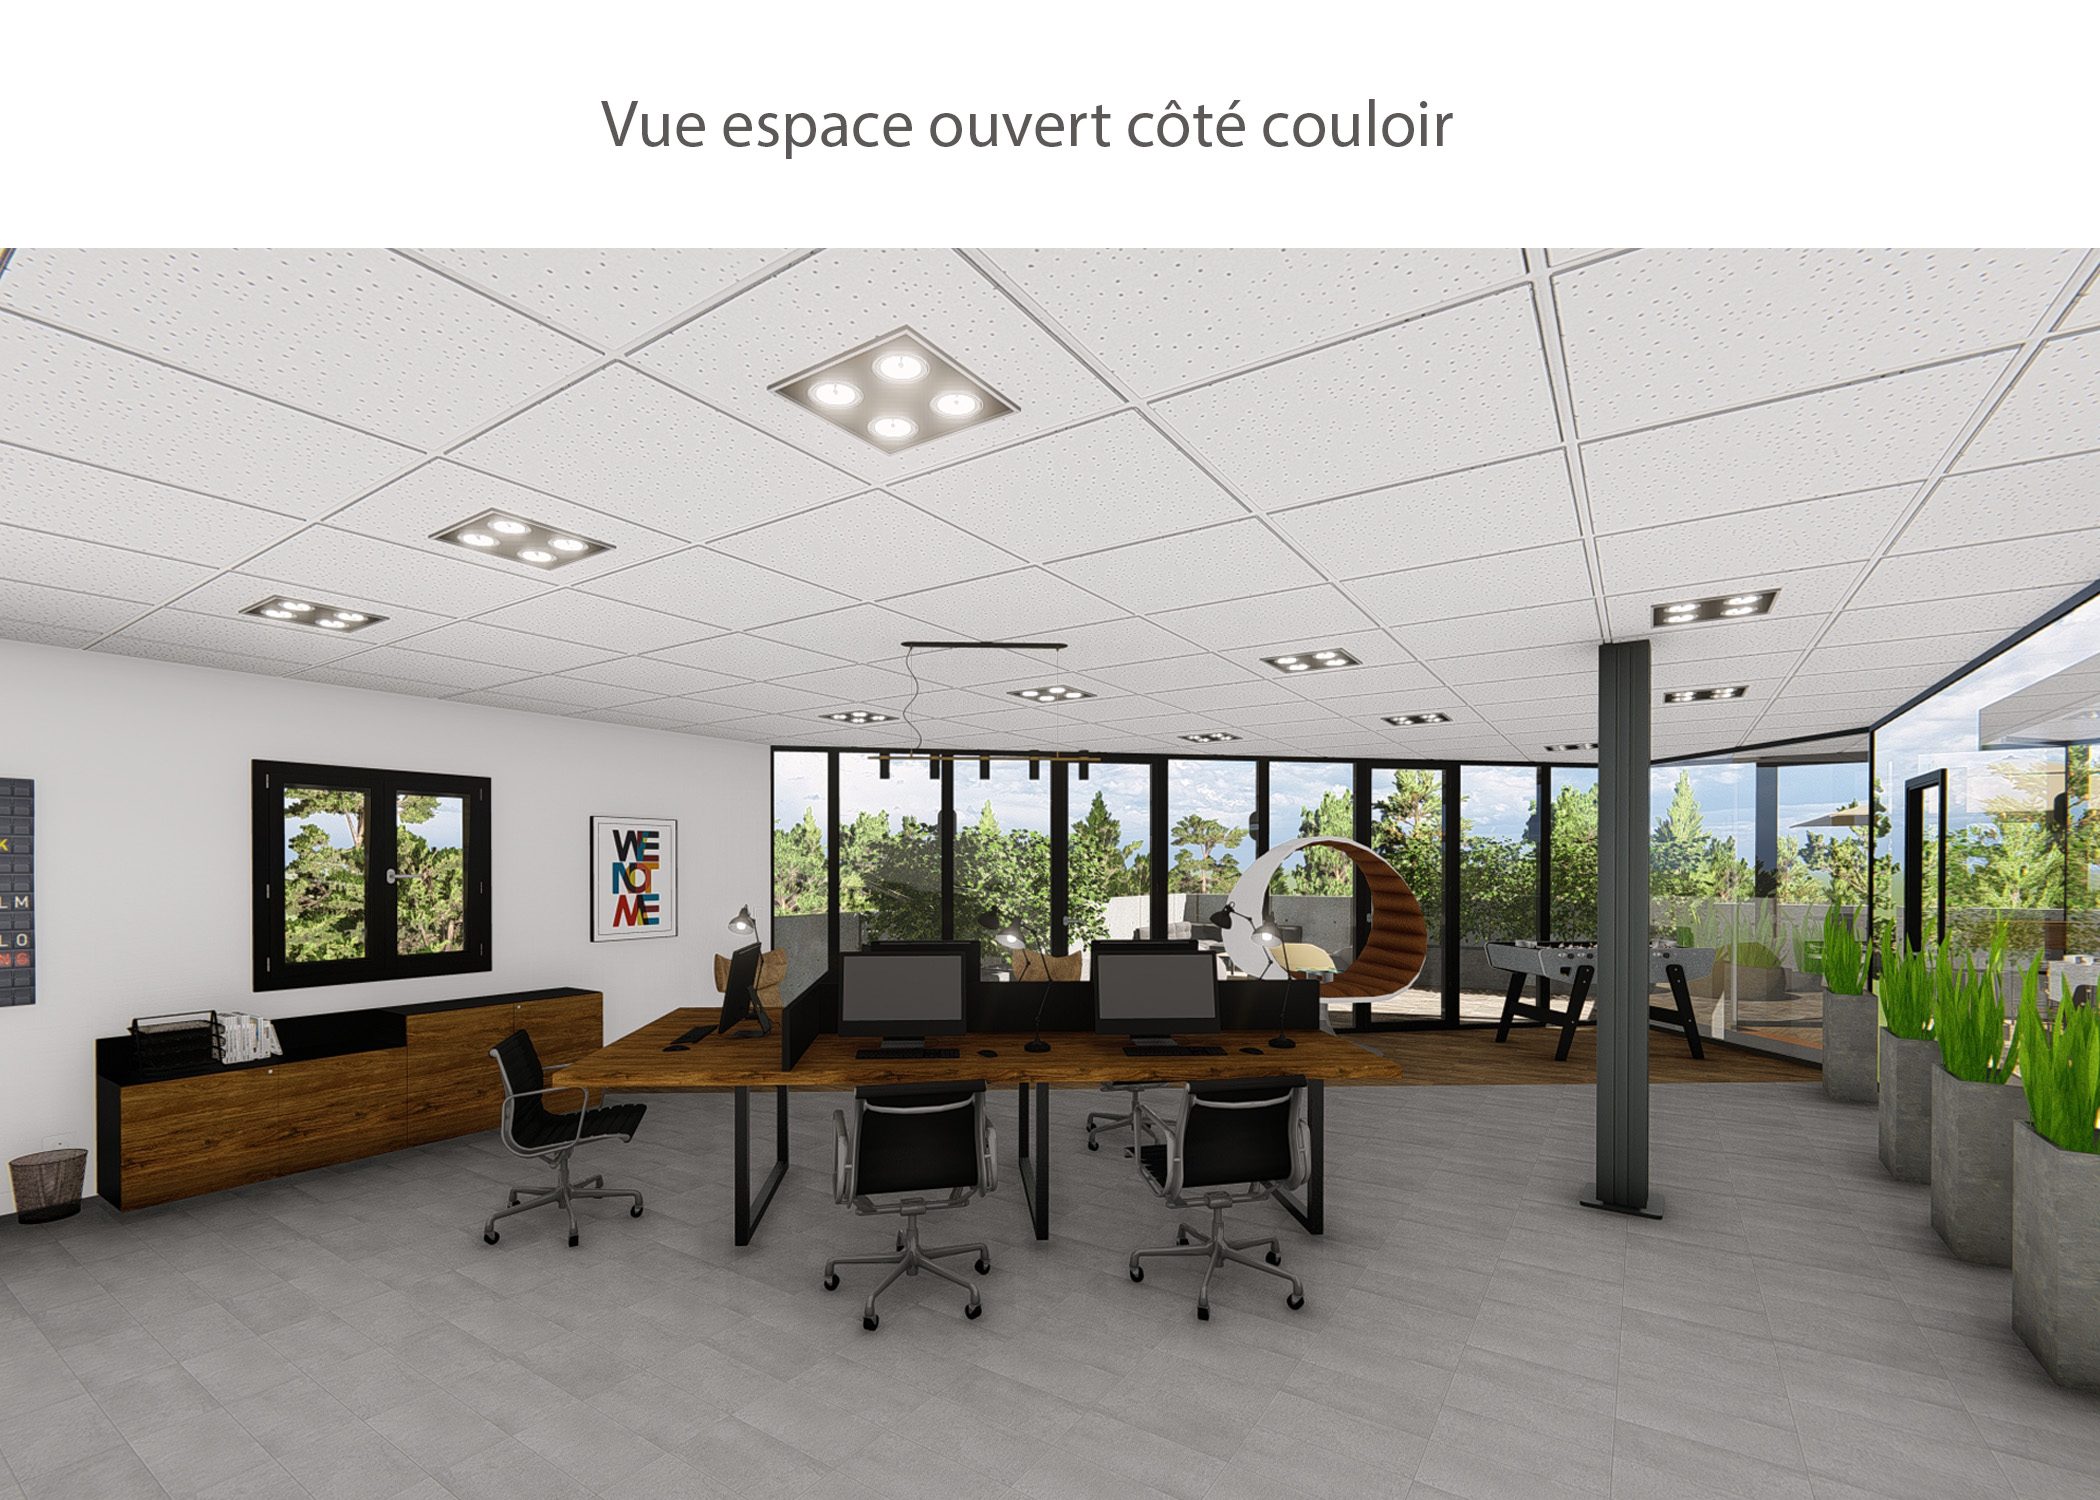 amenagement-decoration-start-up vente en ligne-region parisienne-espace ouvert cote couloir-dekho design